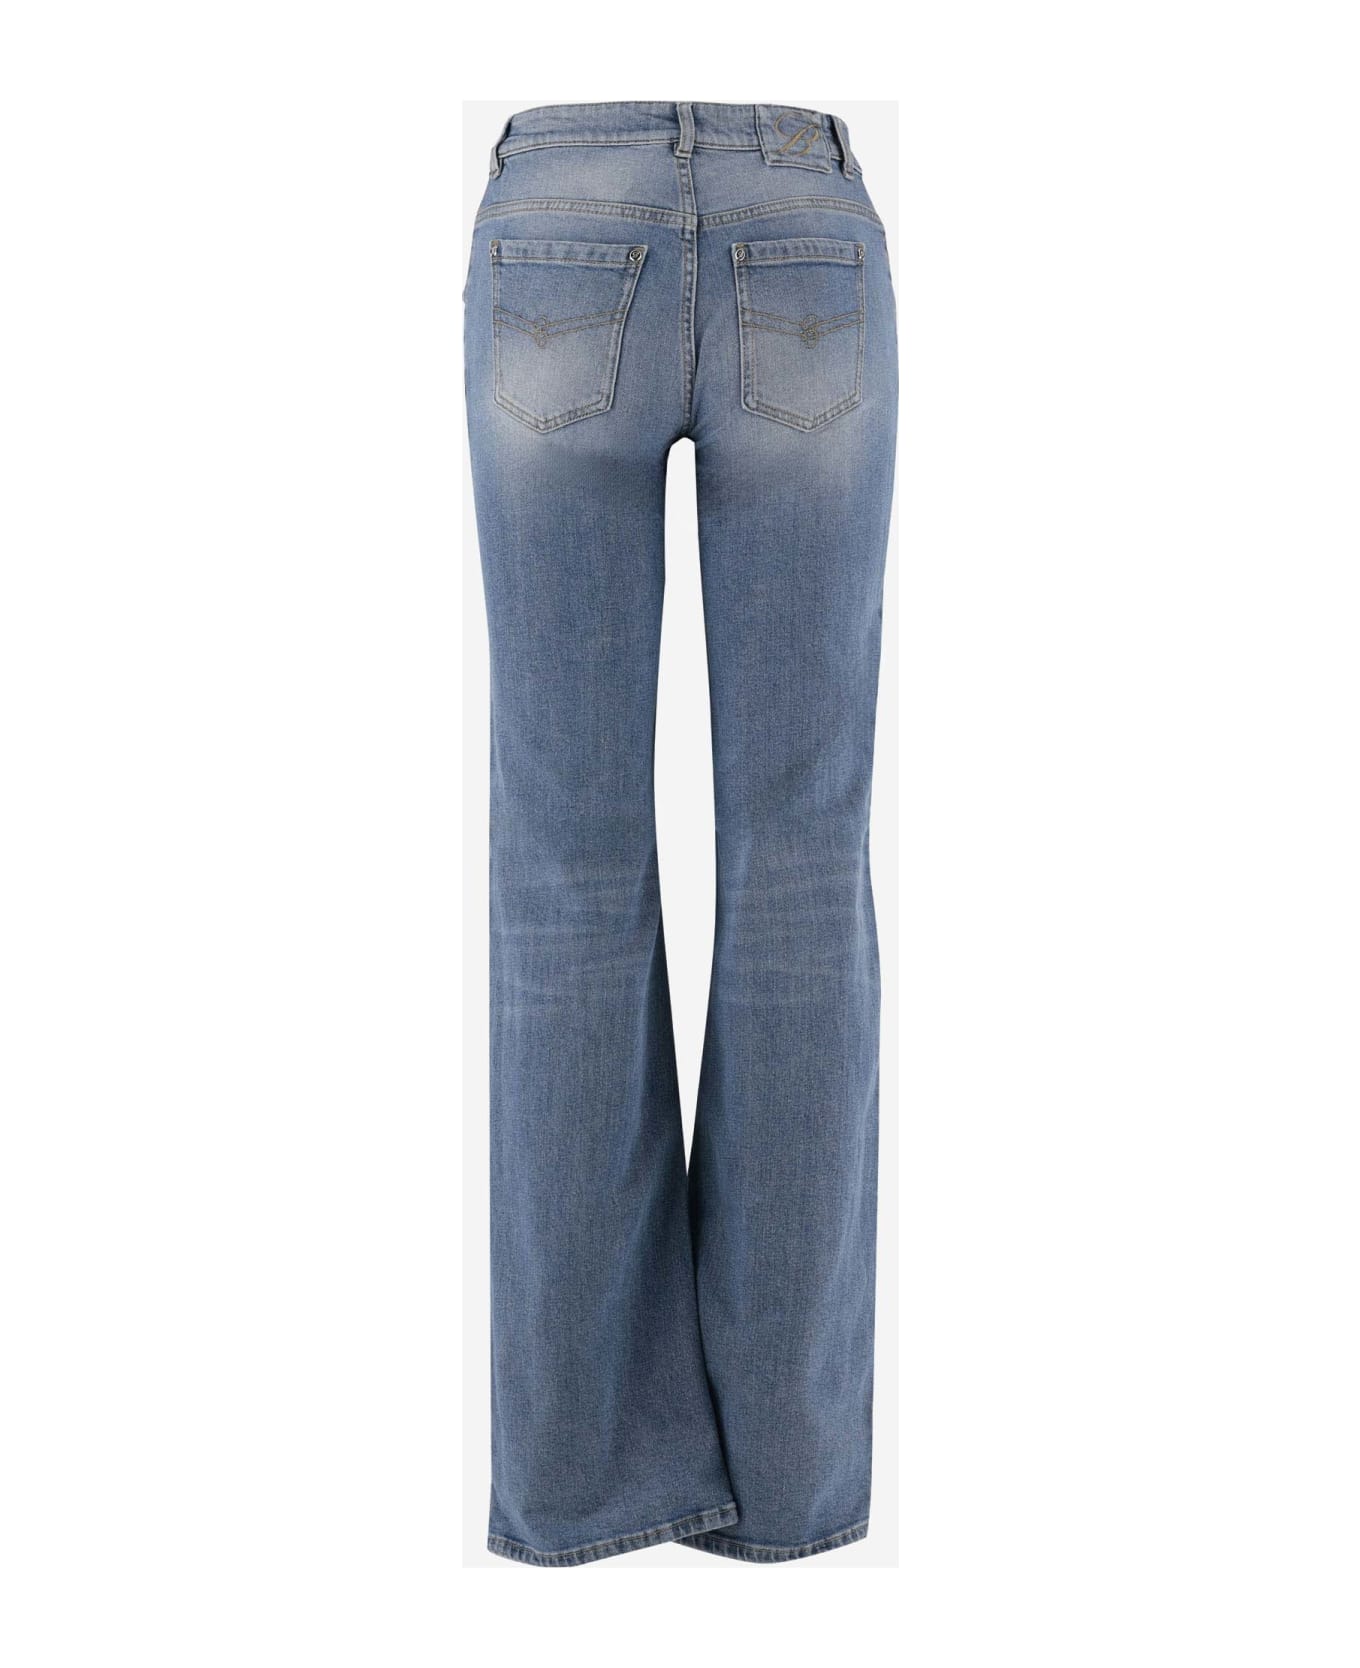 Blumarine Flared Jeans In Stretch Cotton Denim - Denim